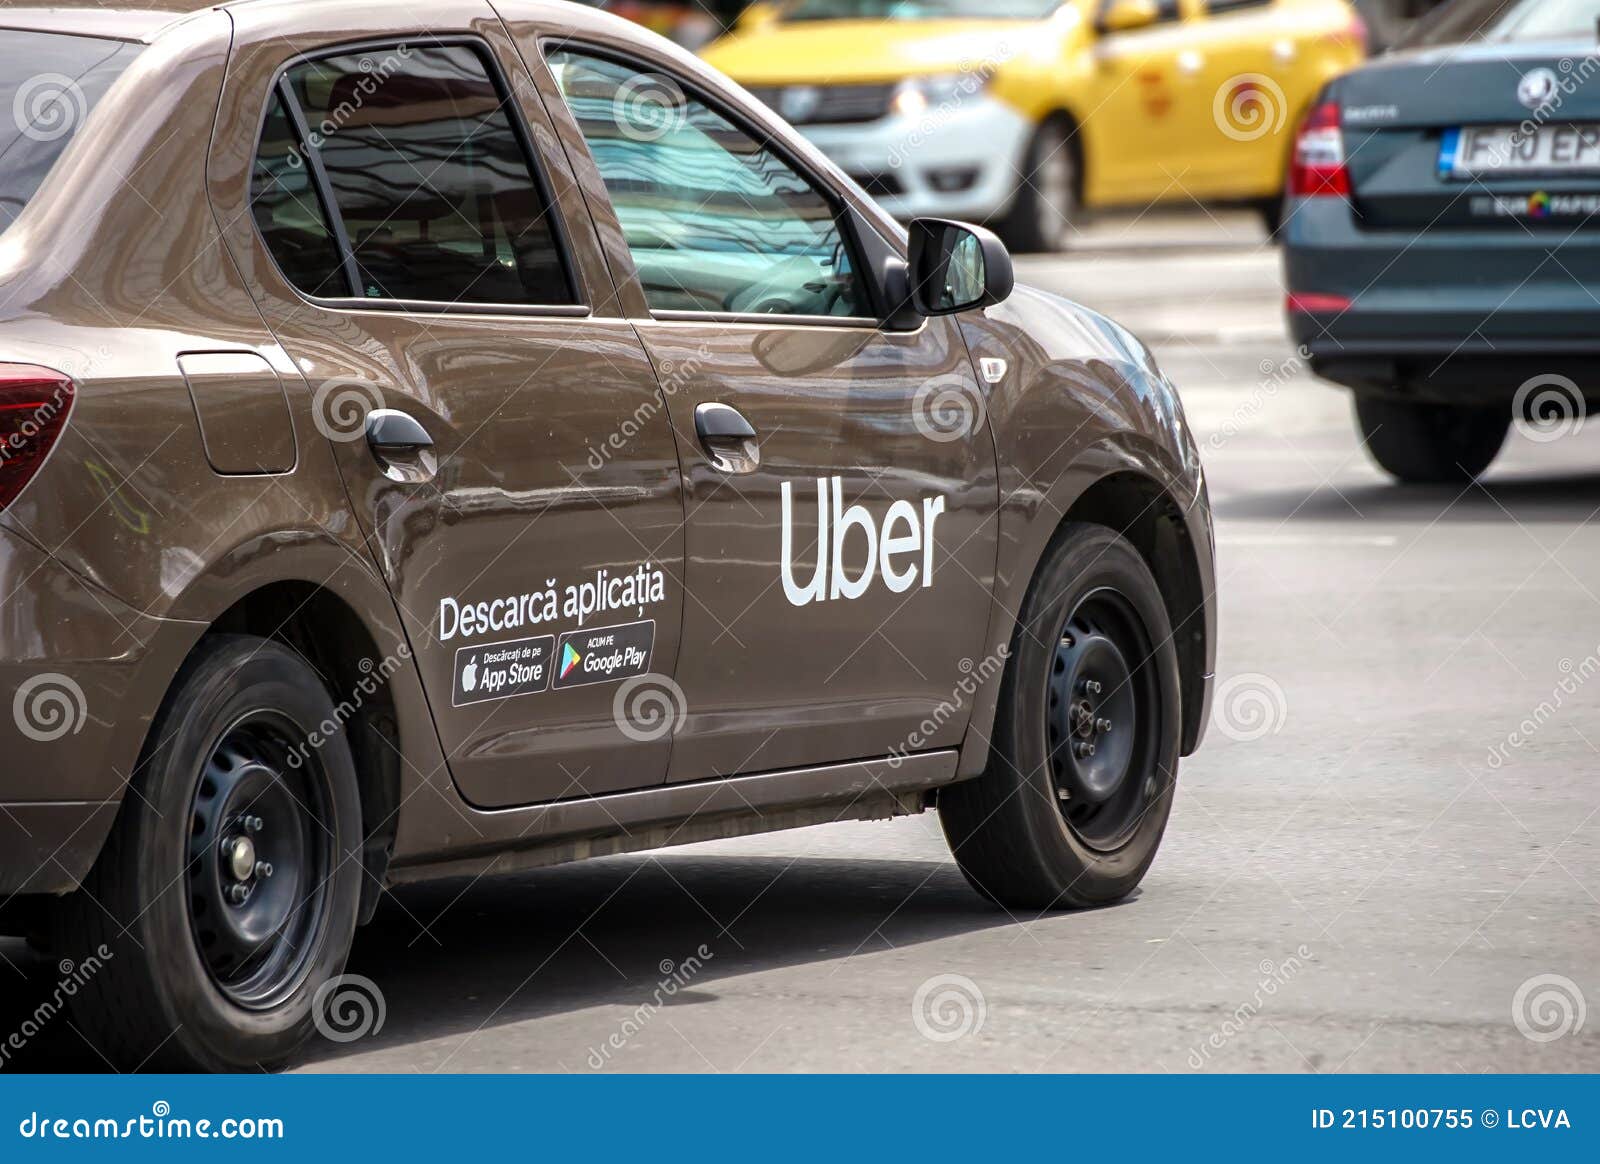 uber taxi bucharest roumanie bucarest mars une voiture de marque logo est vue dans la circulation rue 215100755